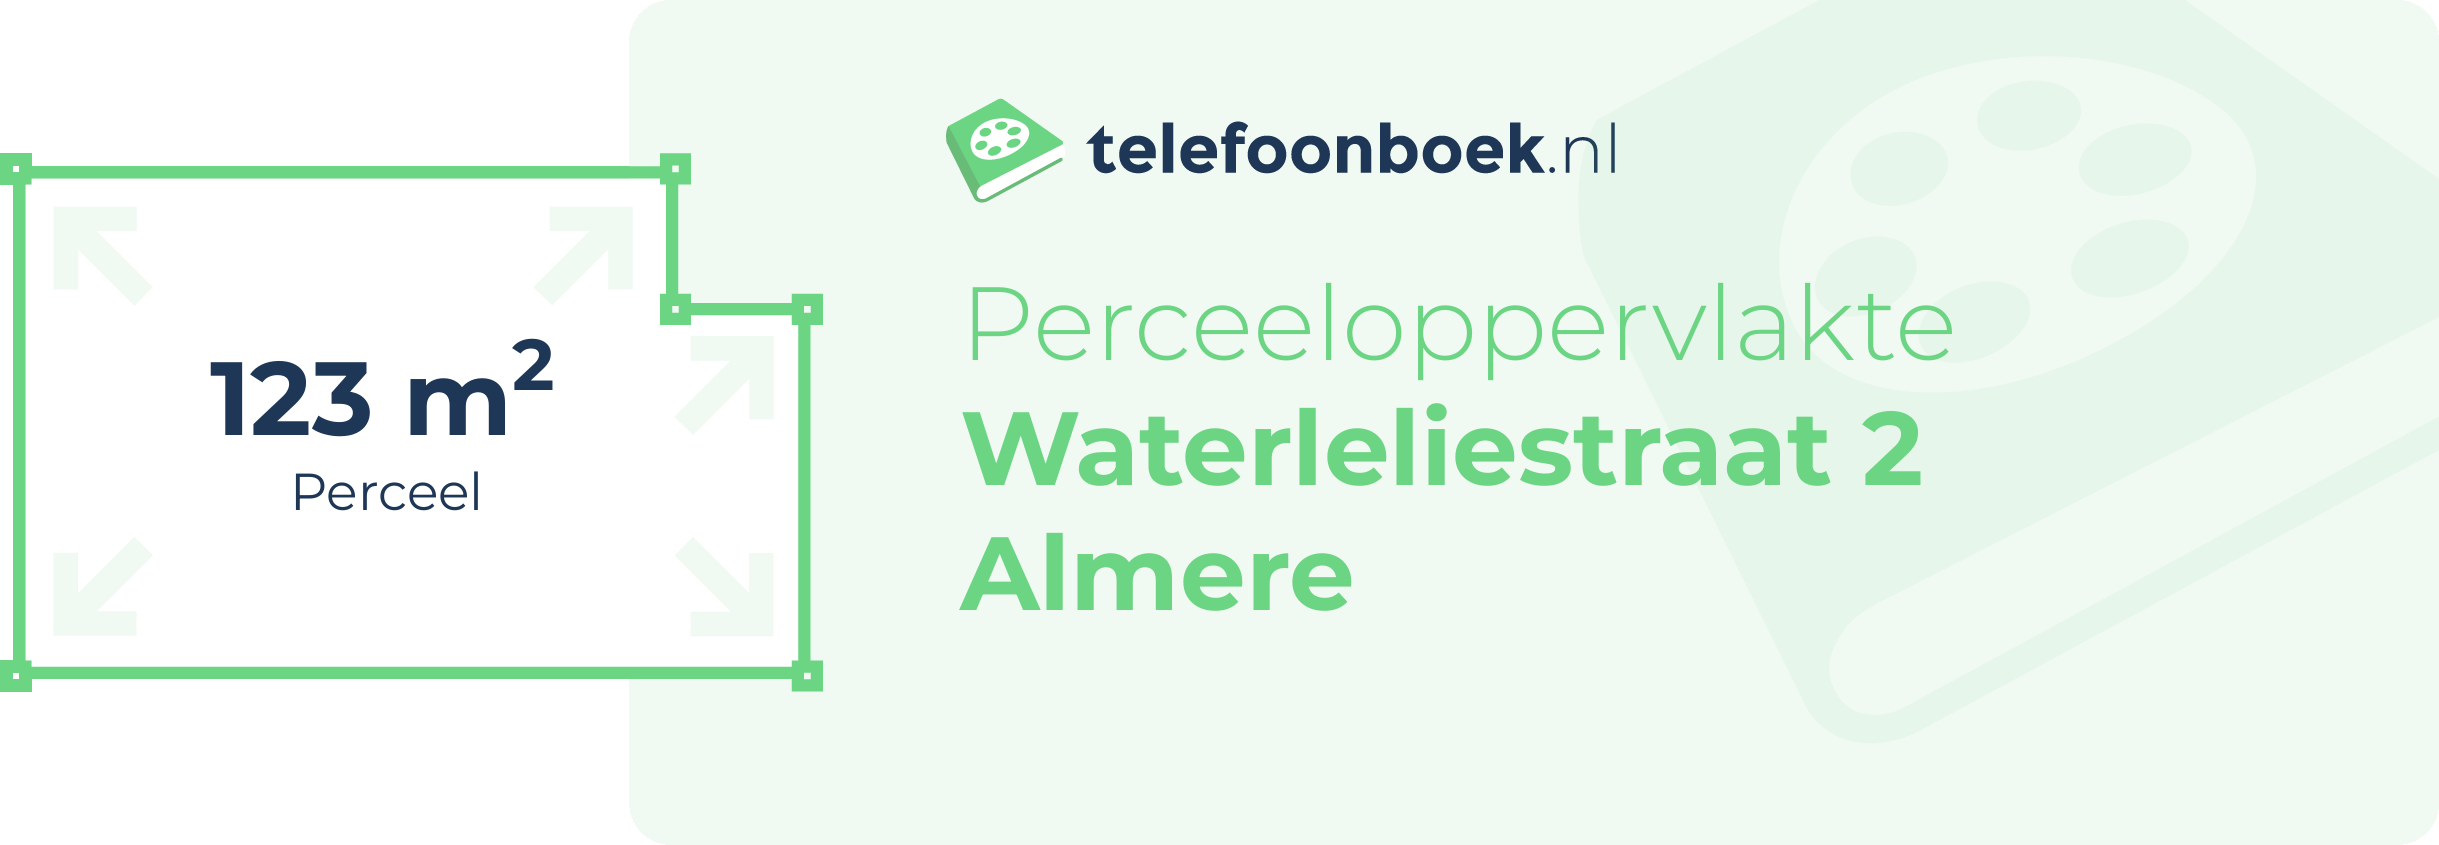 Perceeloppervlakte Waterleliestraat 2 Almere